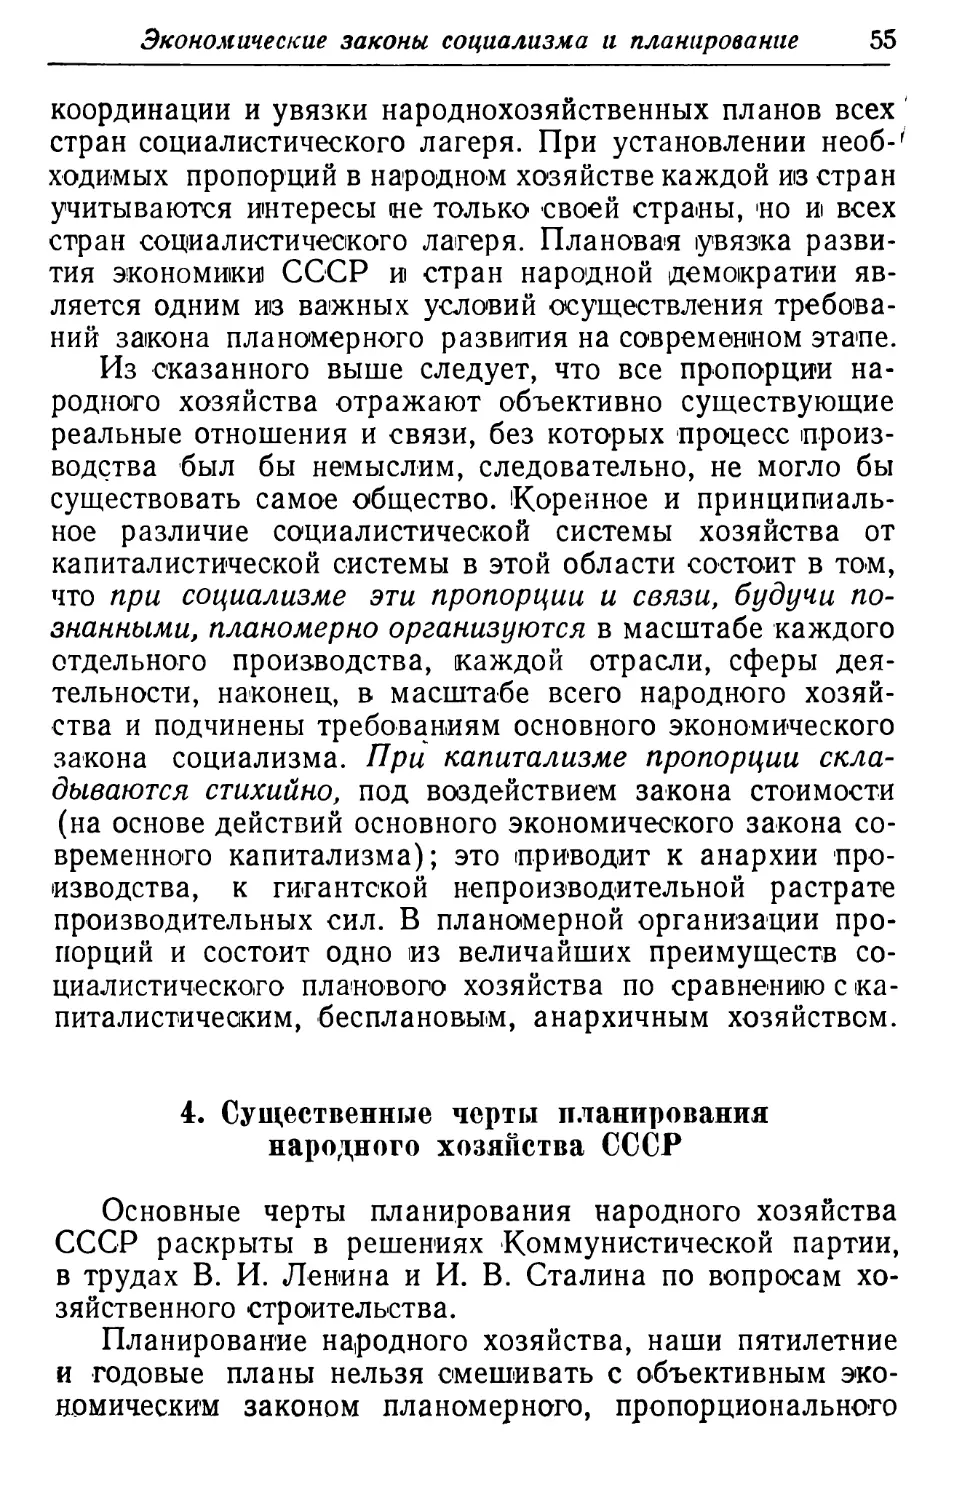 4. Существенные черты планирования народного хозяйства СССР